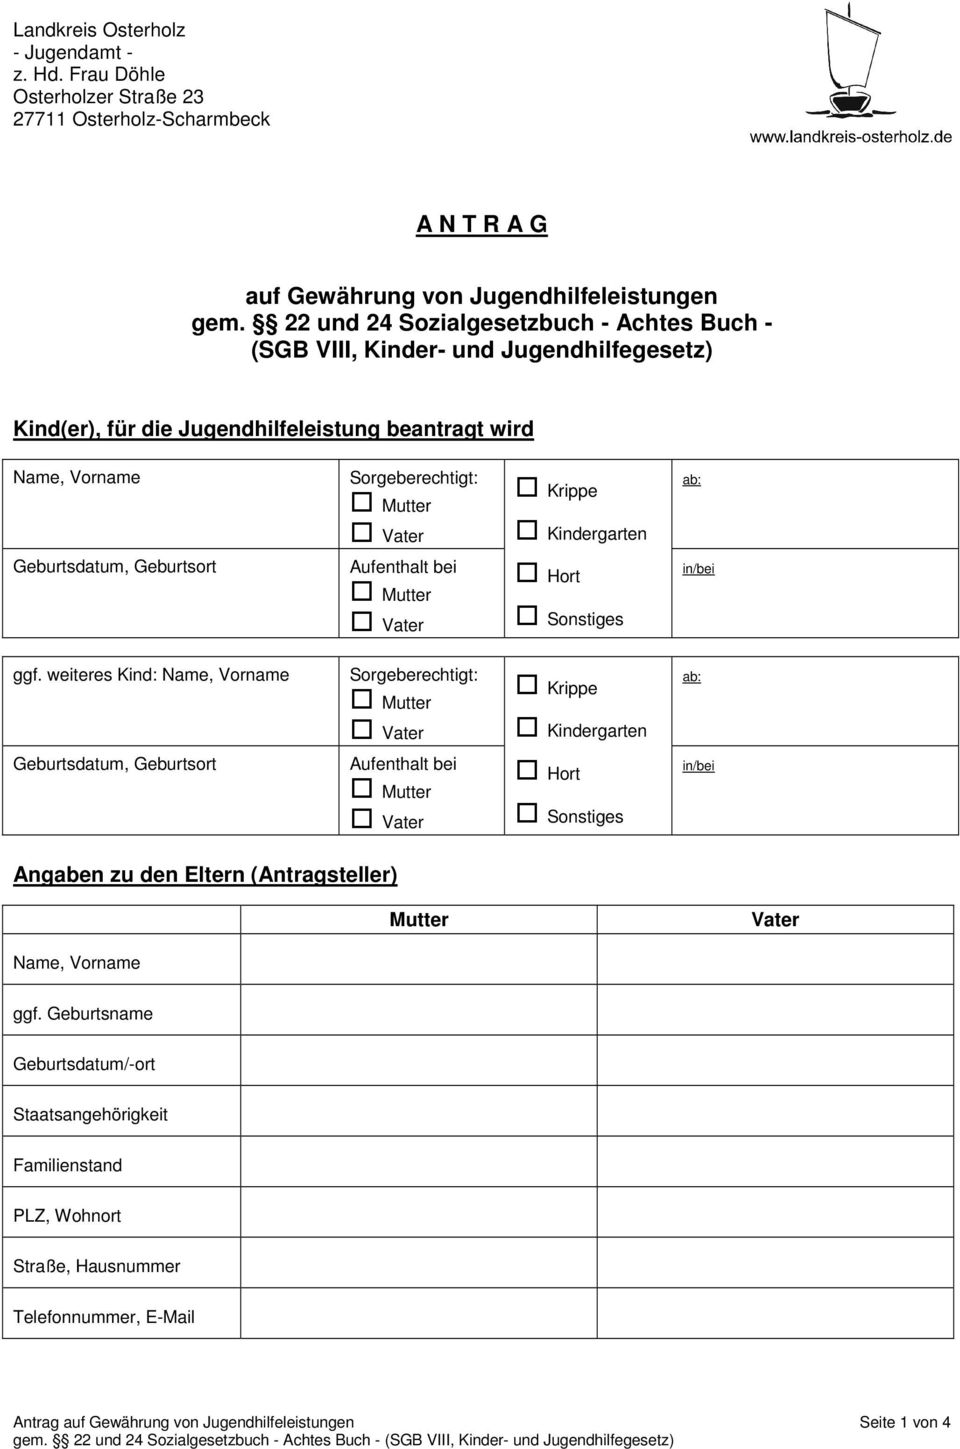 Kindergarten ab: Geburtsdatum, Geburtsort Aufenthalt bei Hort Sonstiges in/bei ggf.